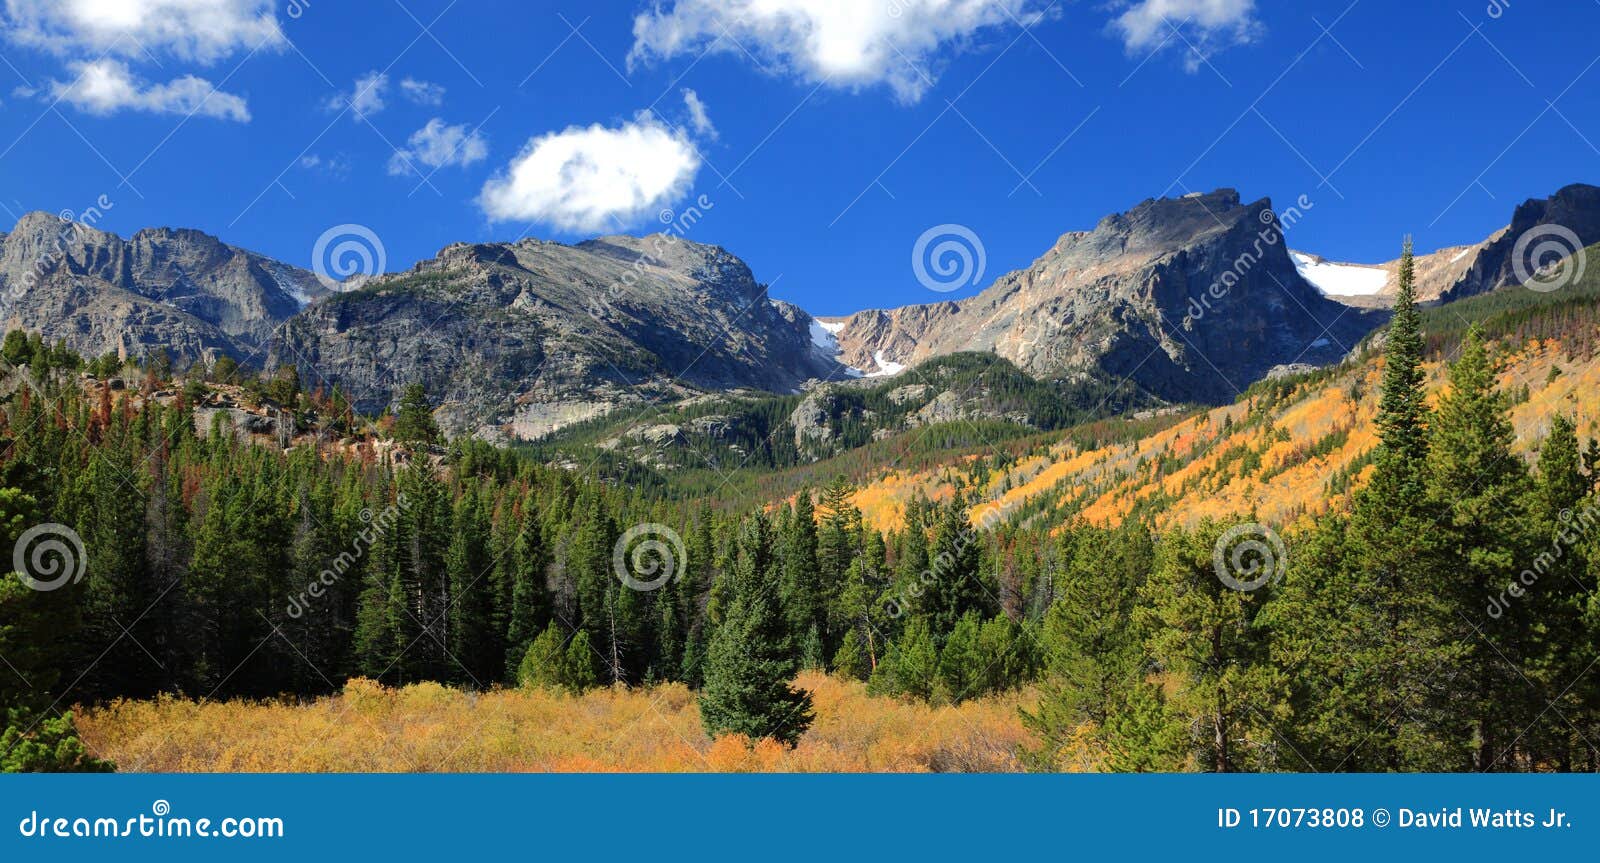 colorado landscape